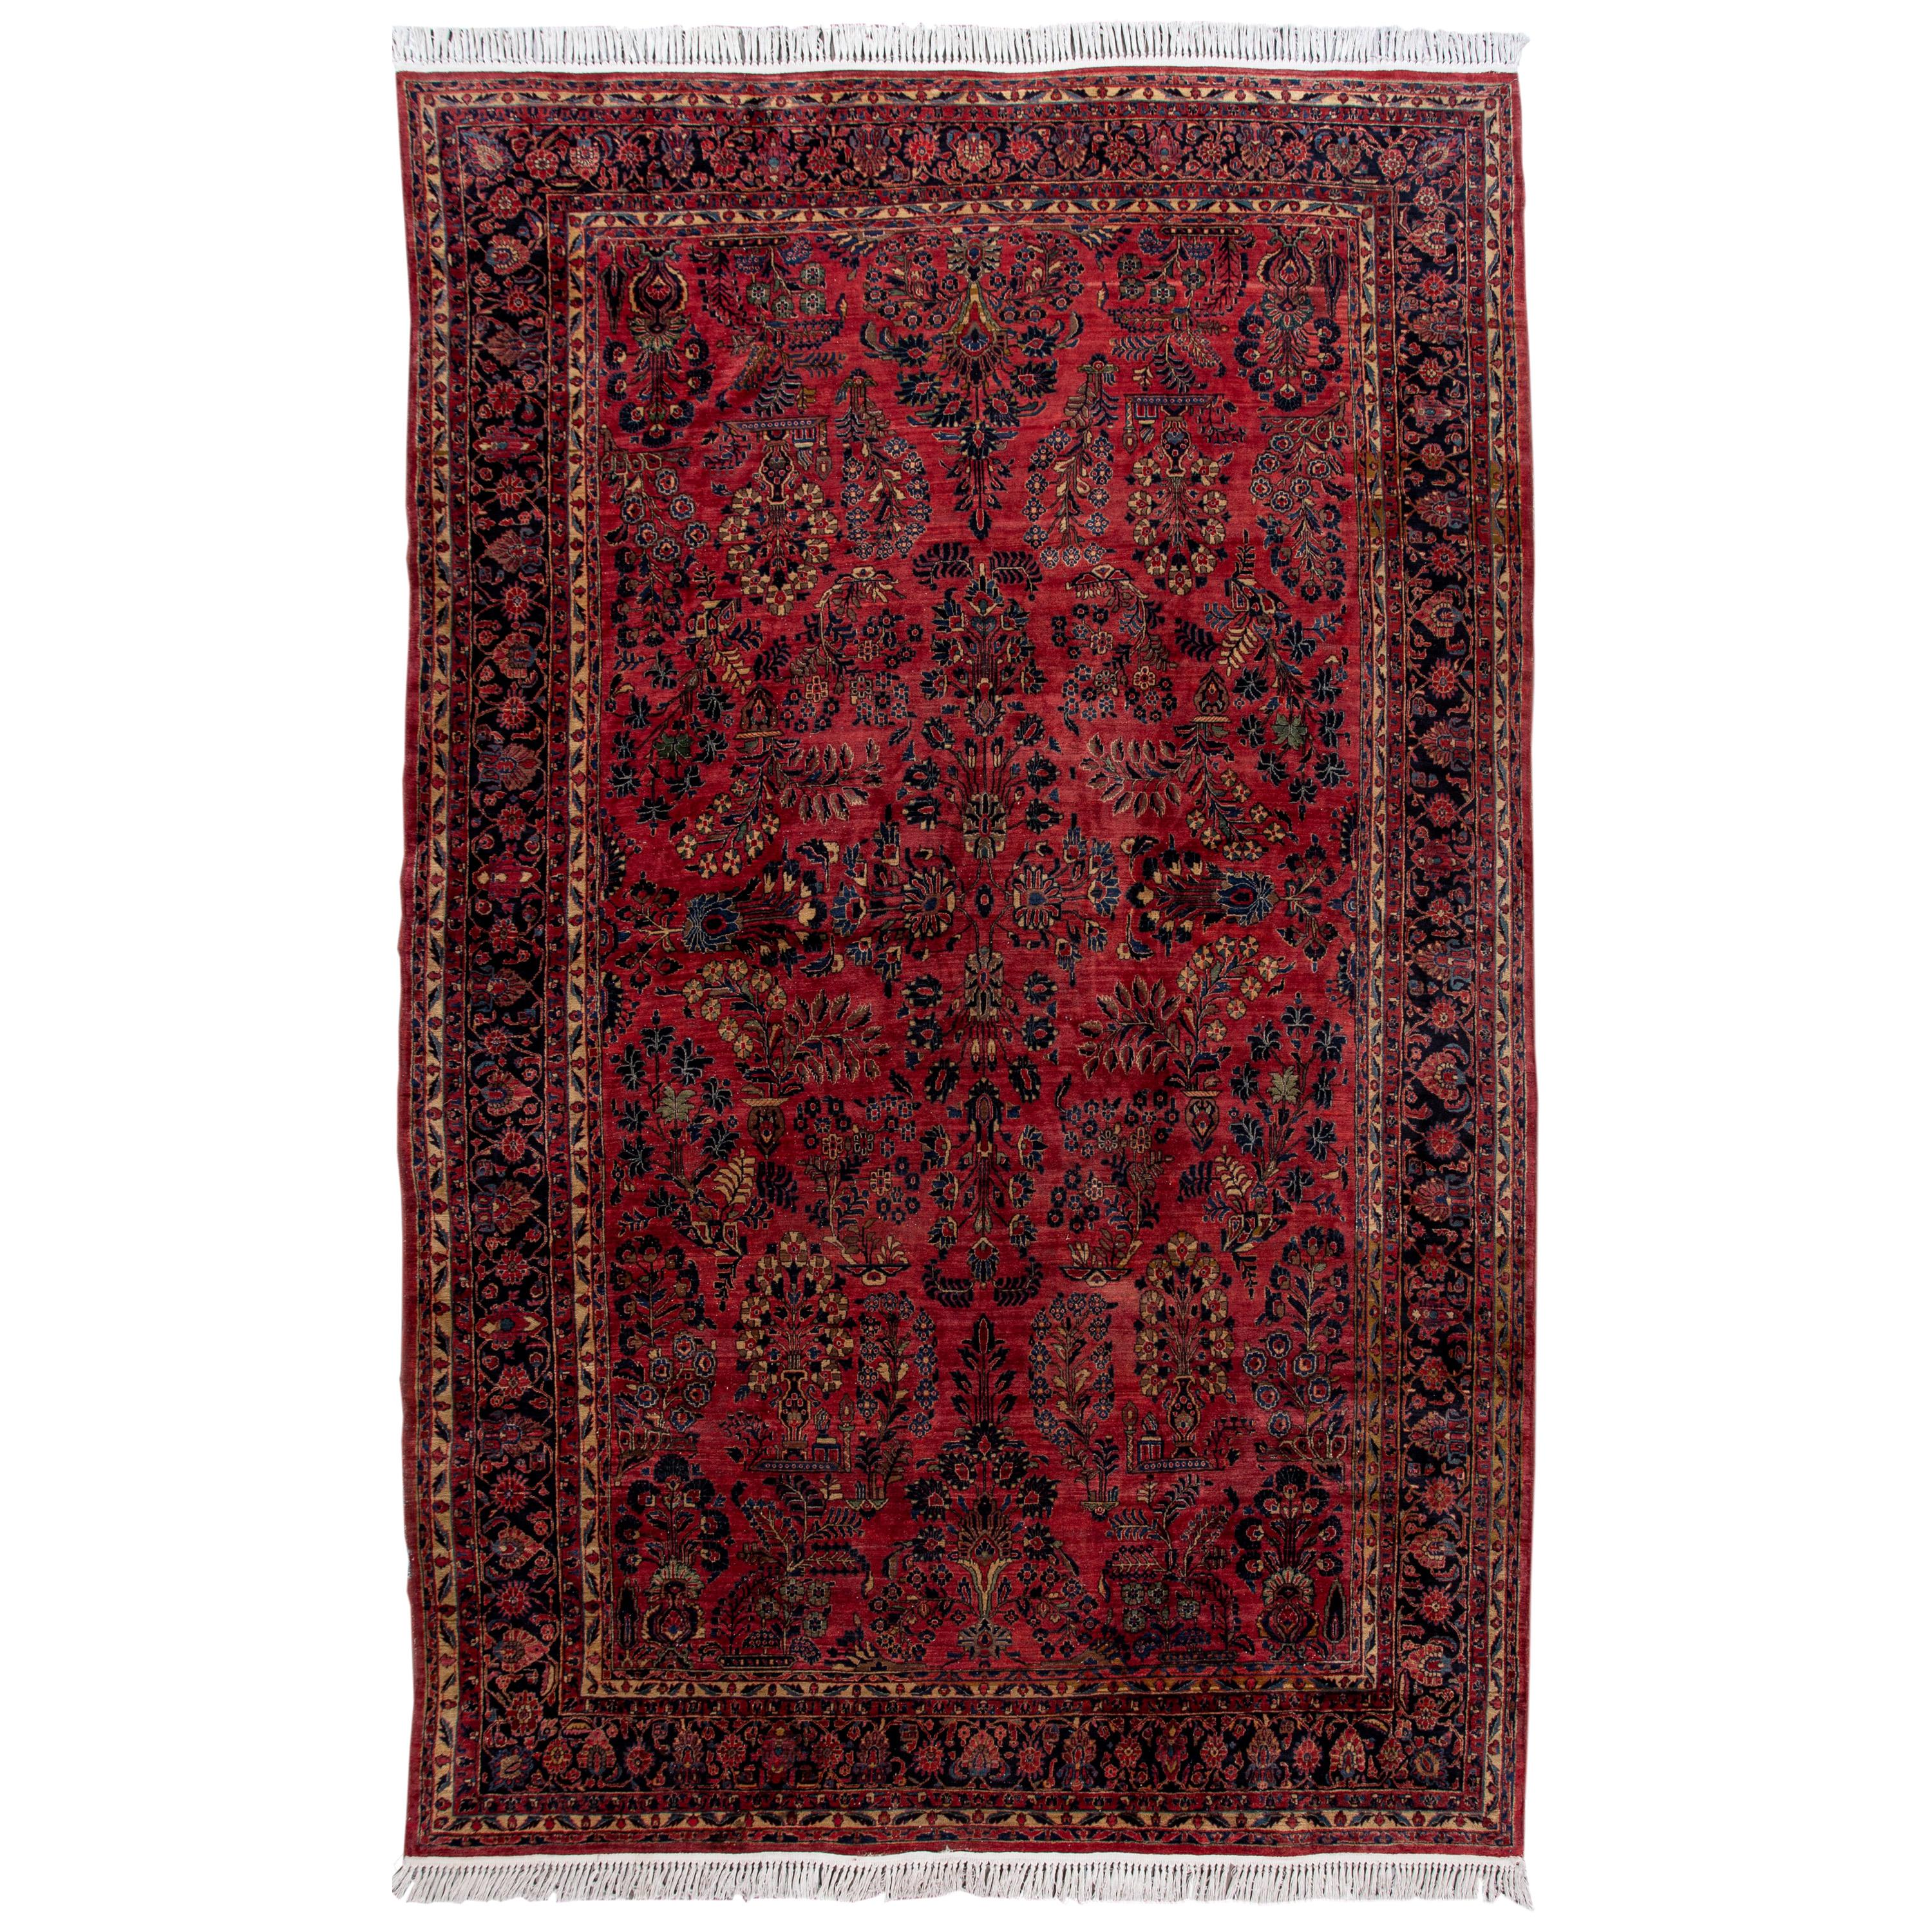 Antique tapis en laine rouge Sarouk Farahan persan surdimensionné